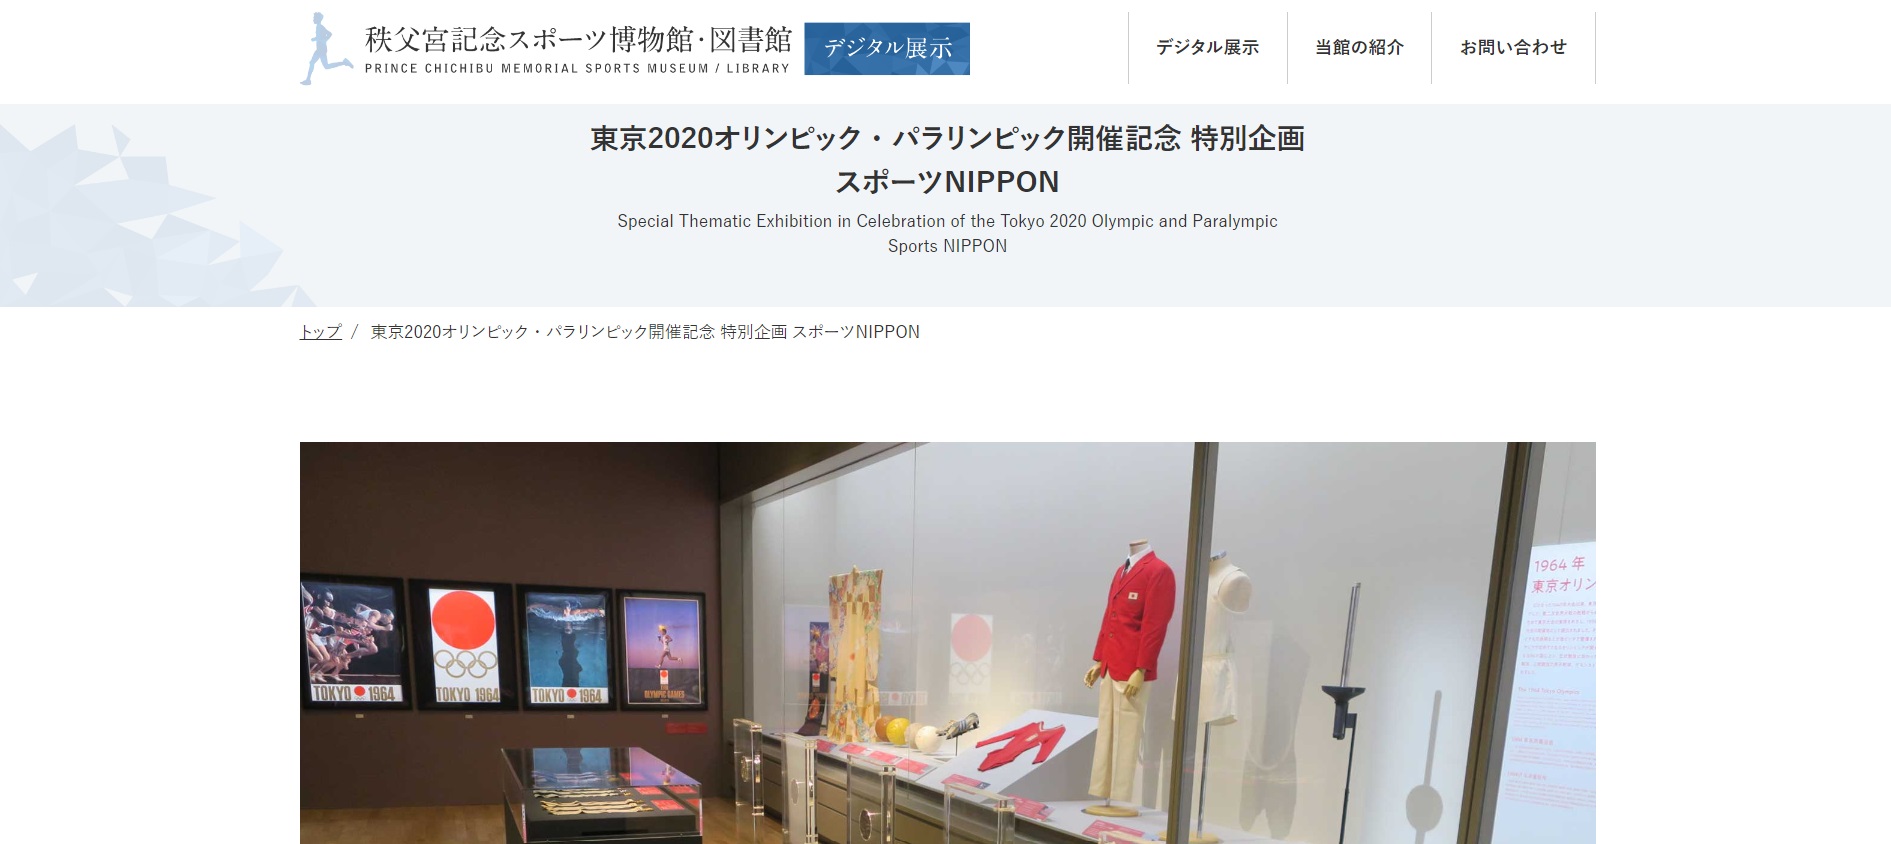 秩父宮記念スポーツ博物館・図書館　デジタル展示Webサイトの「スポーツNIPPON」展のページ画像